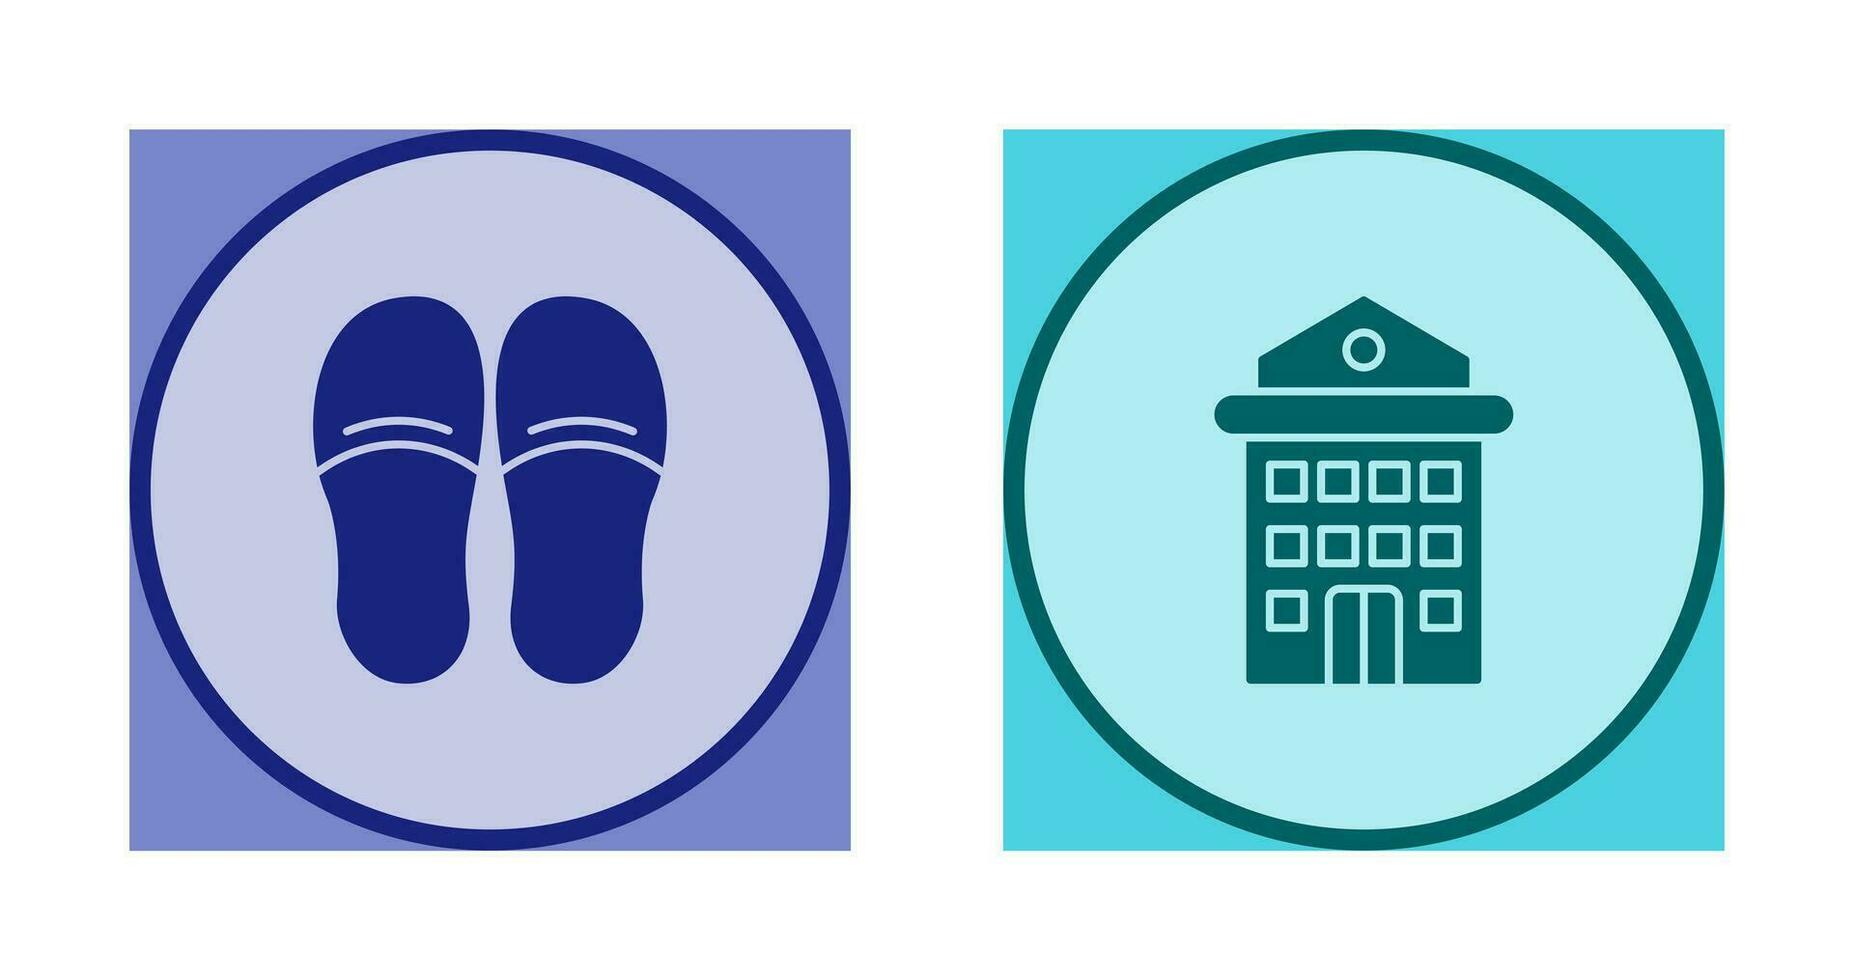 slippers en hotel icoon vector